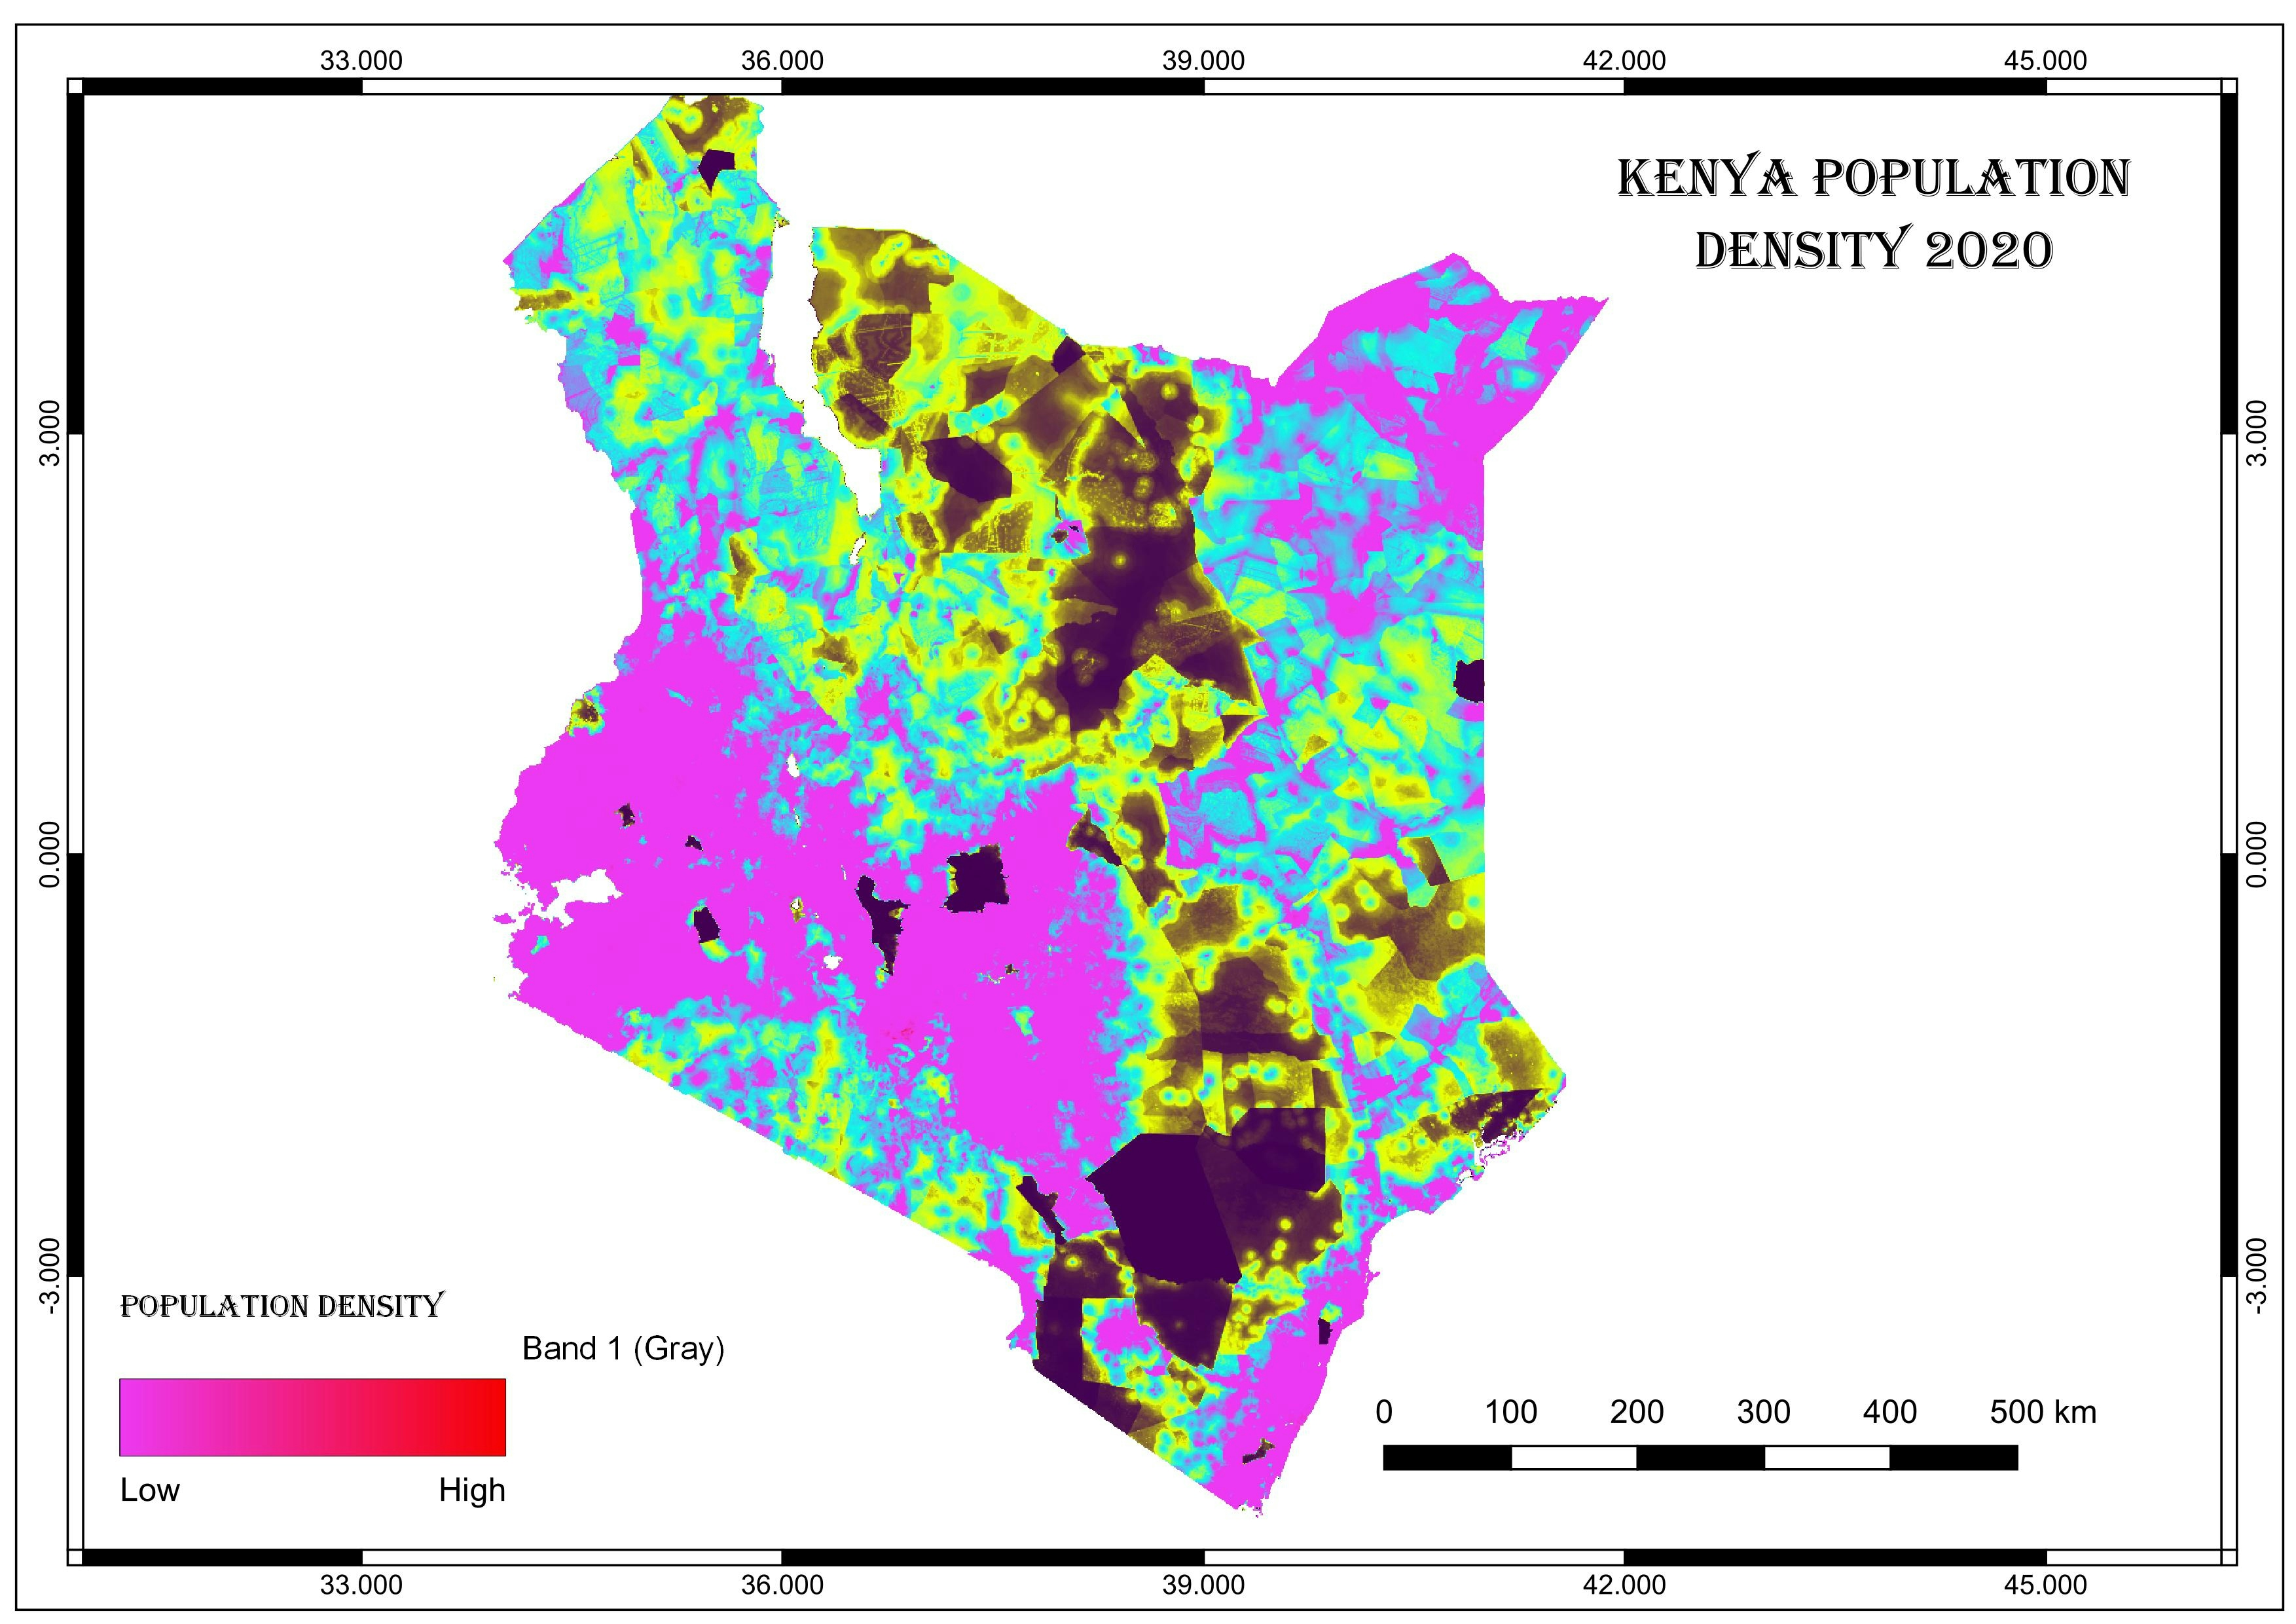 Kenya Population Density 2020